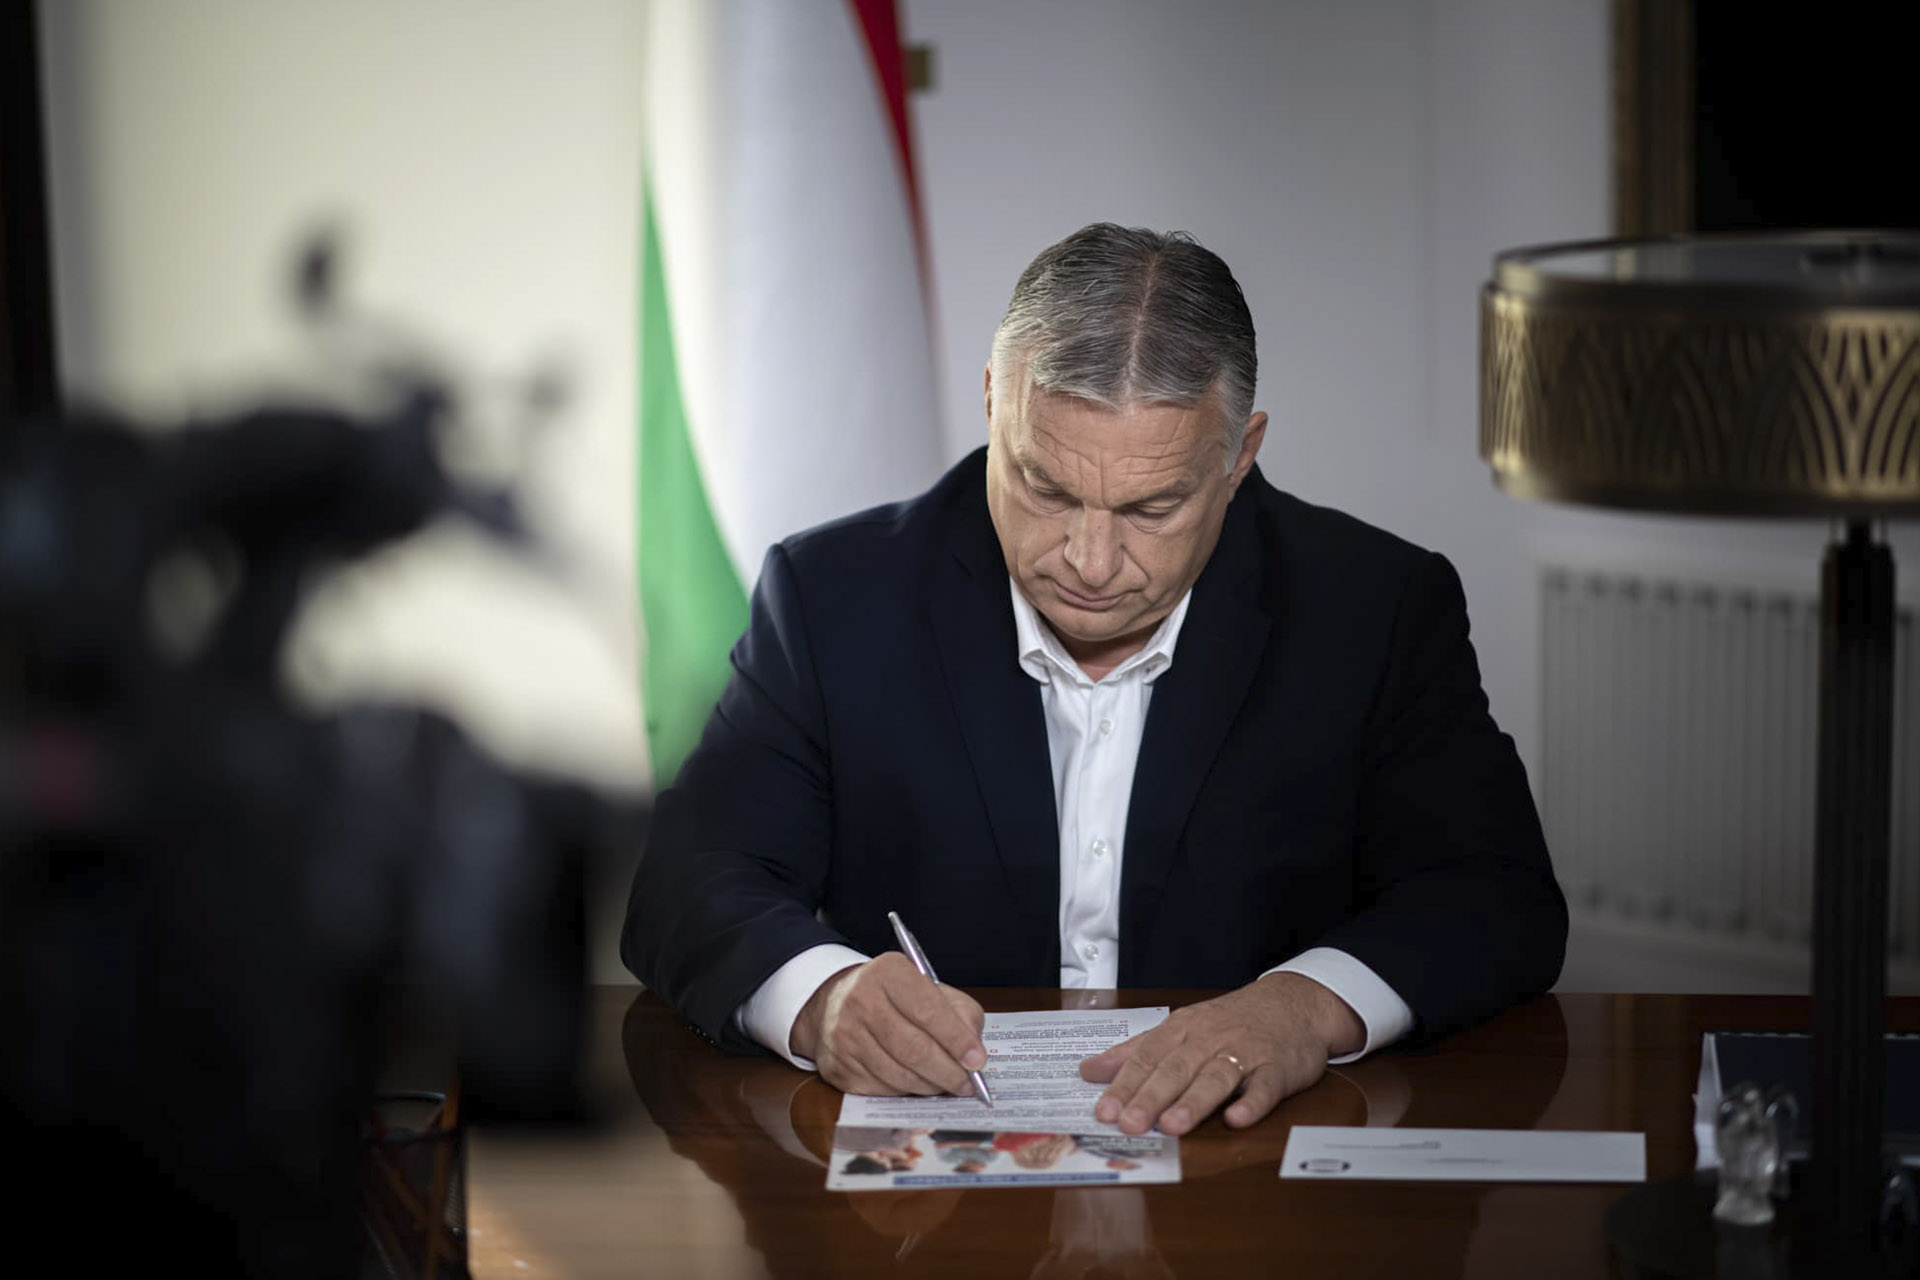 Kizárják az újságírókat Orbán Viktor október 23-i beszédéről